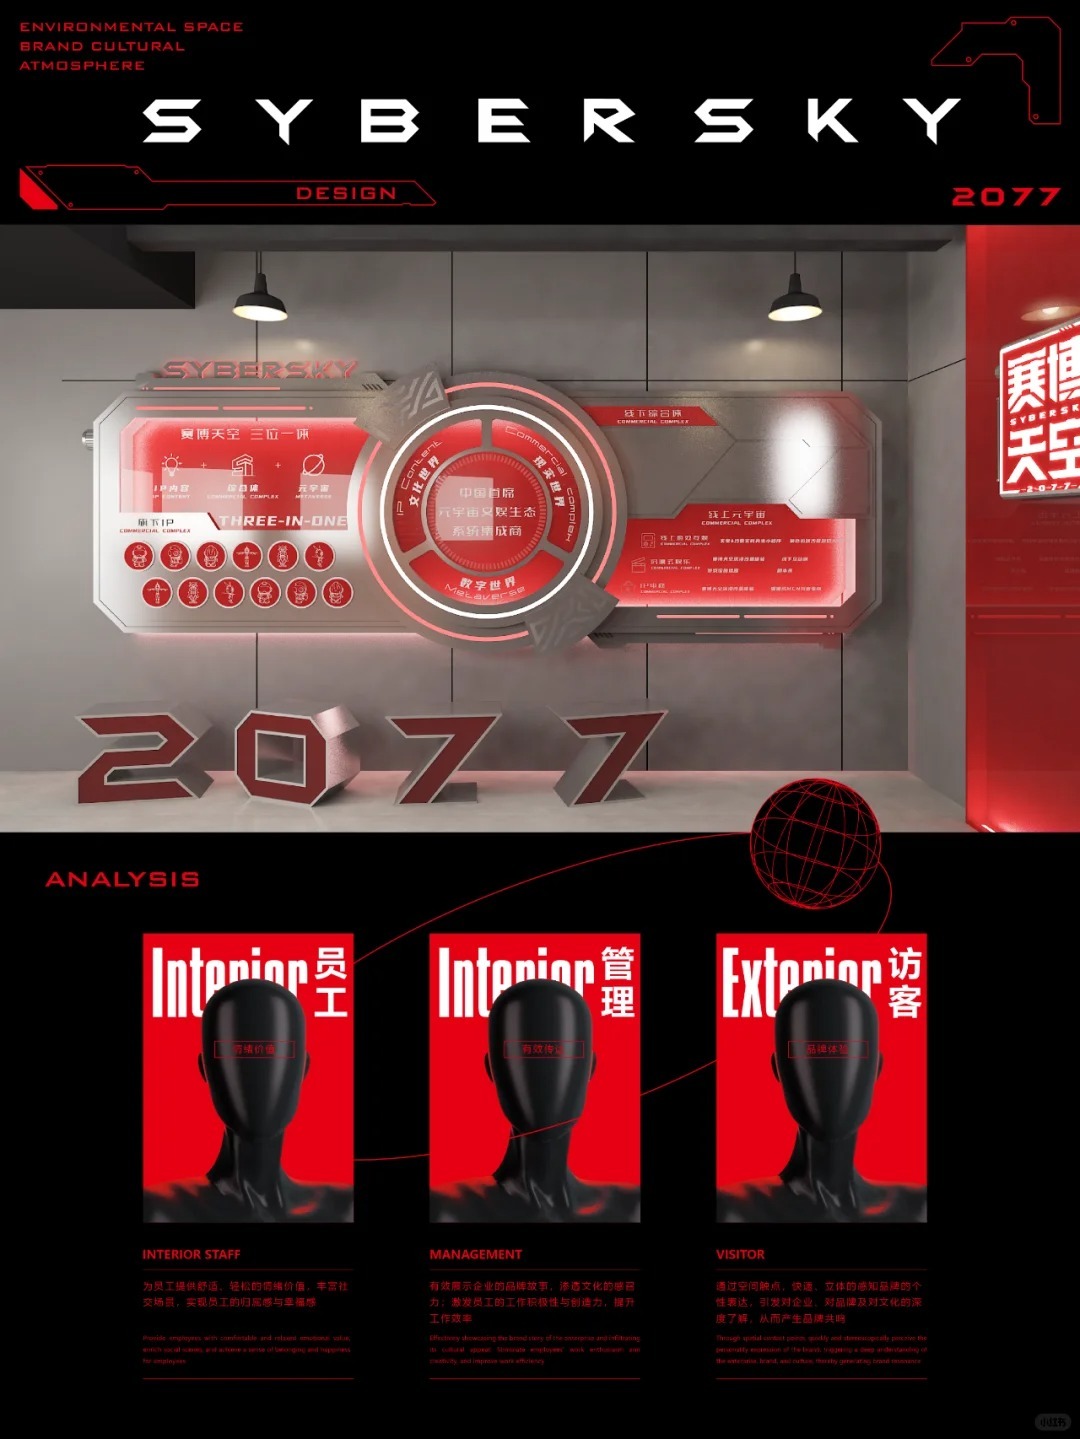 赛博天空2077-空间品牌文化氛围设计图0